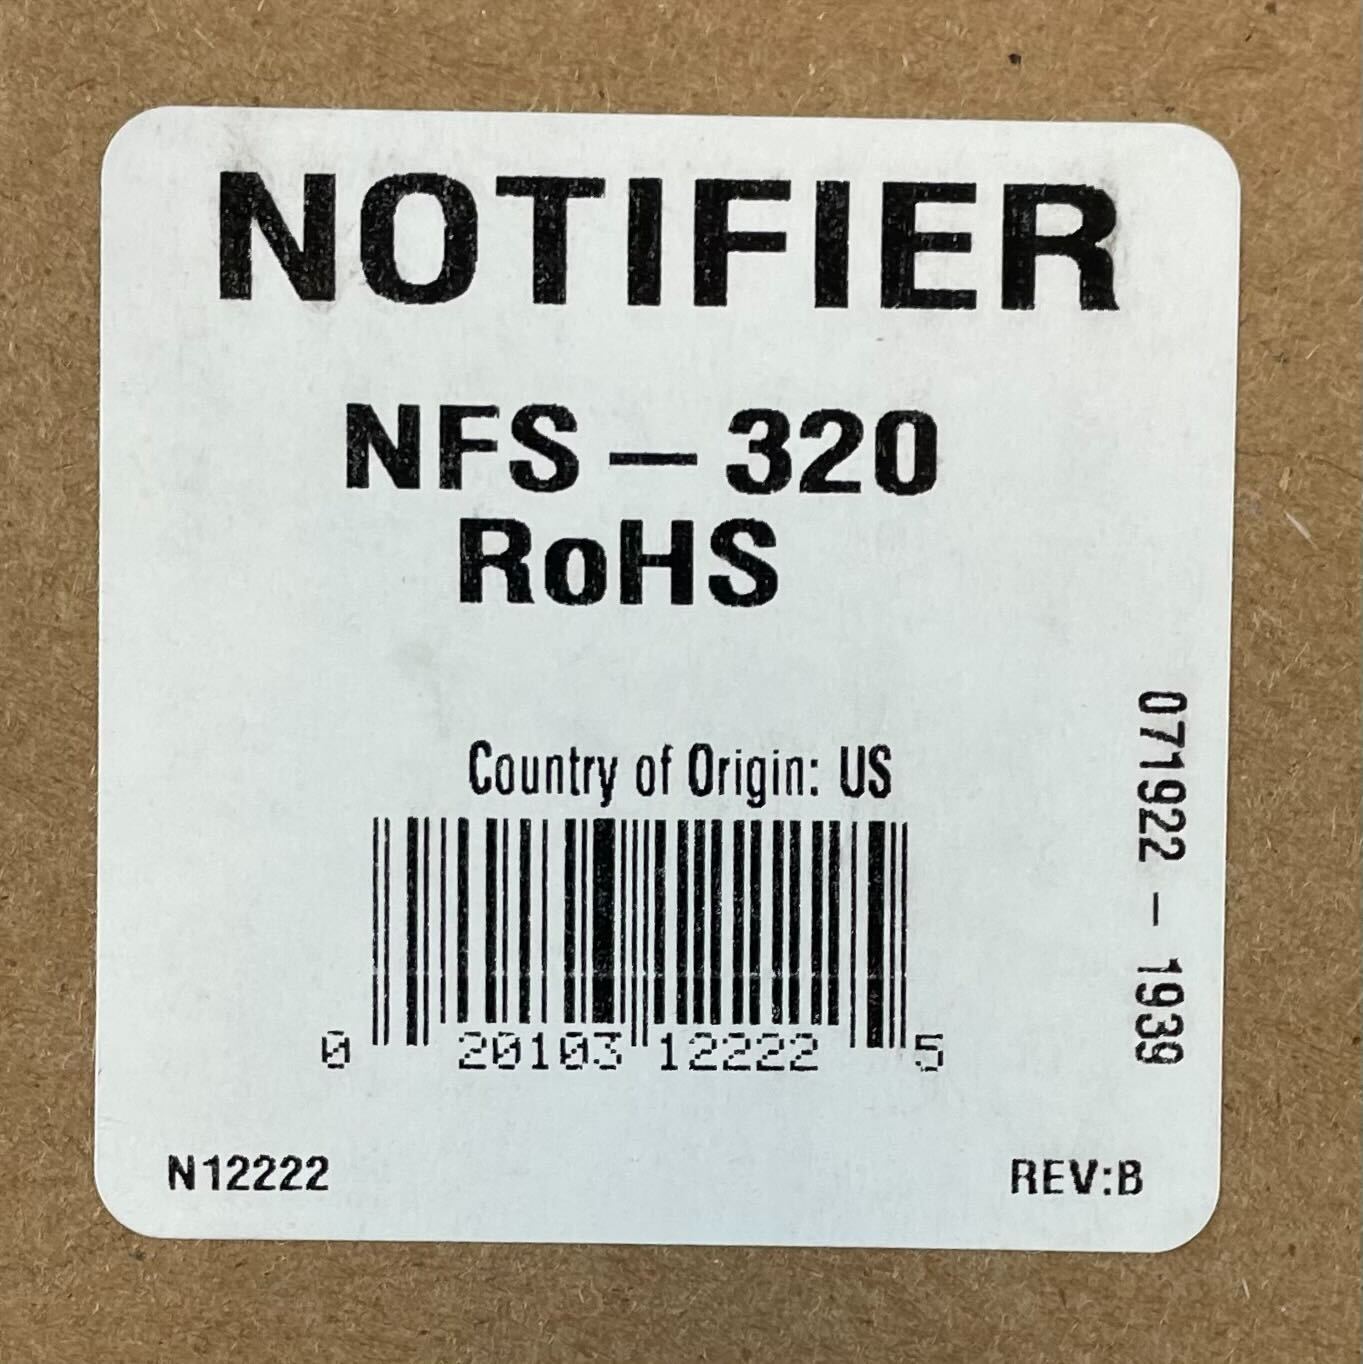 Notifier NFS-320 - The Fire Alarm Supplier